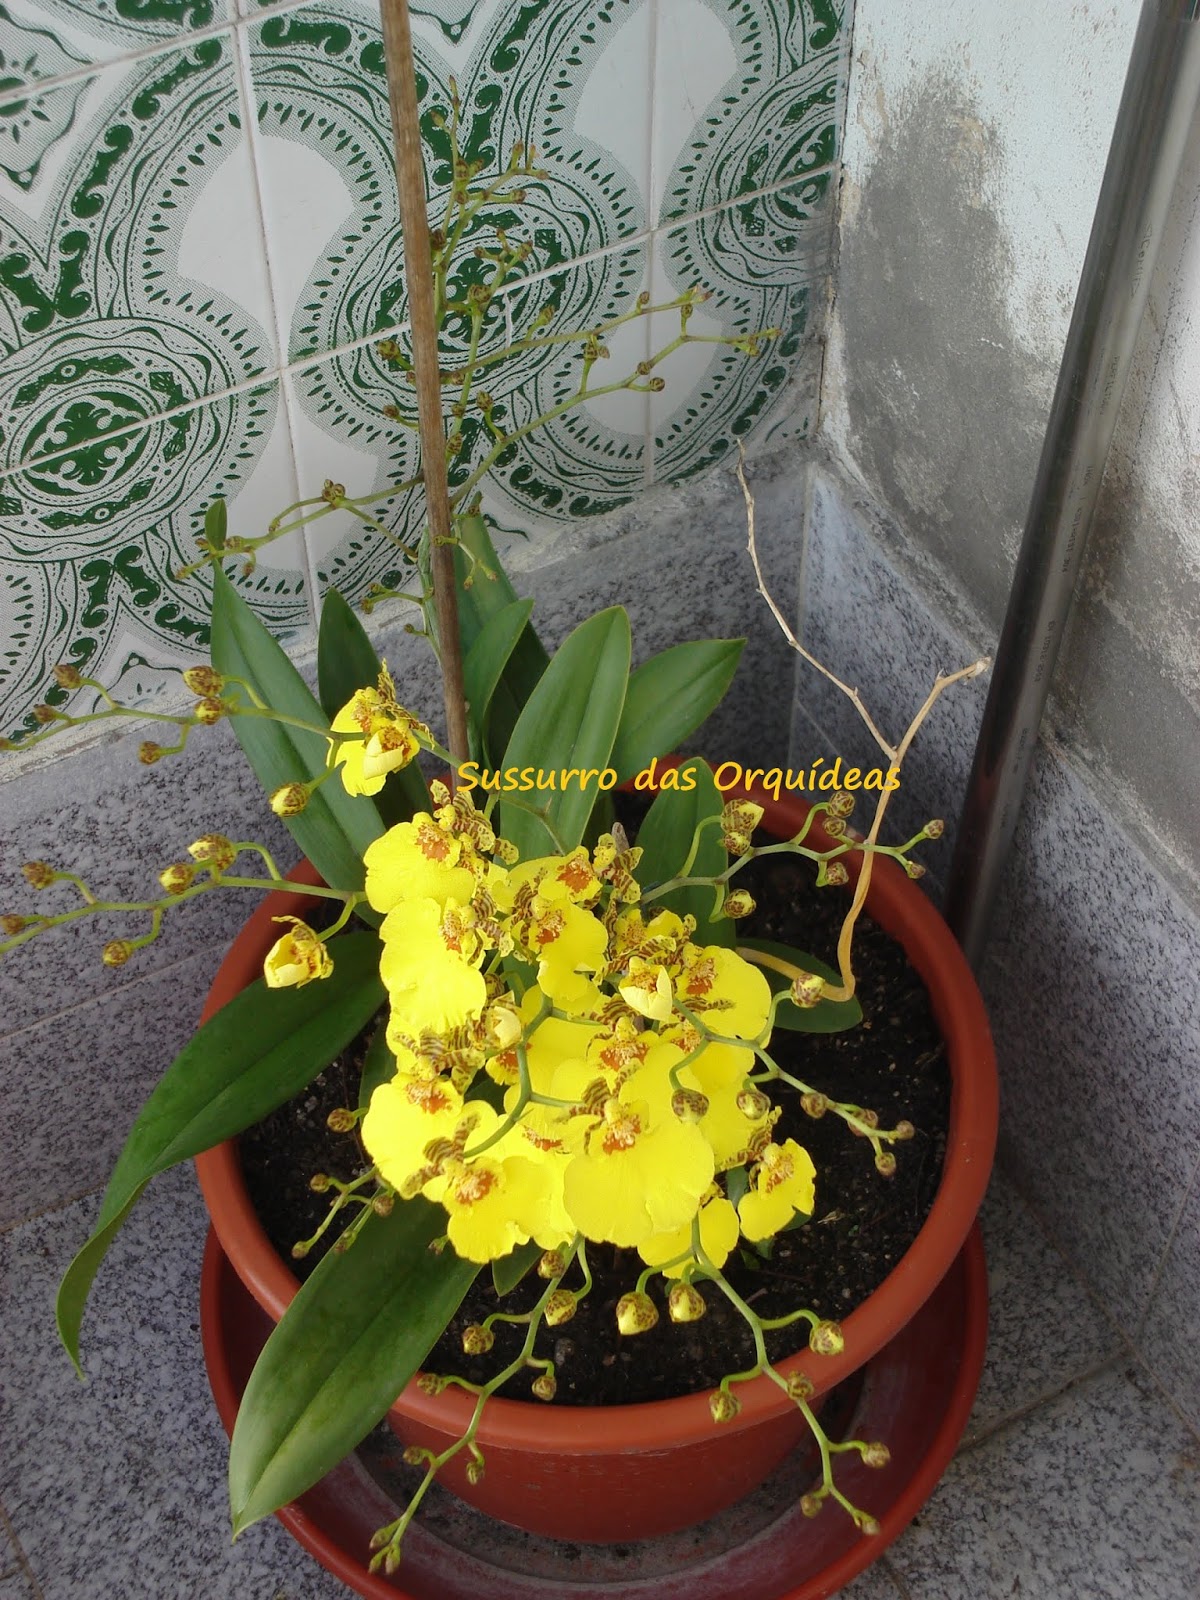 Sussurro das Orquídeas: Fotos do Baú: Oncidium Sweet Sugar - o Primeiro